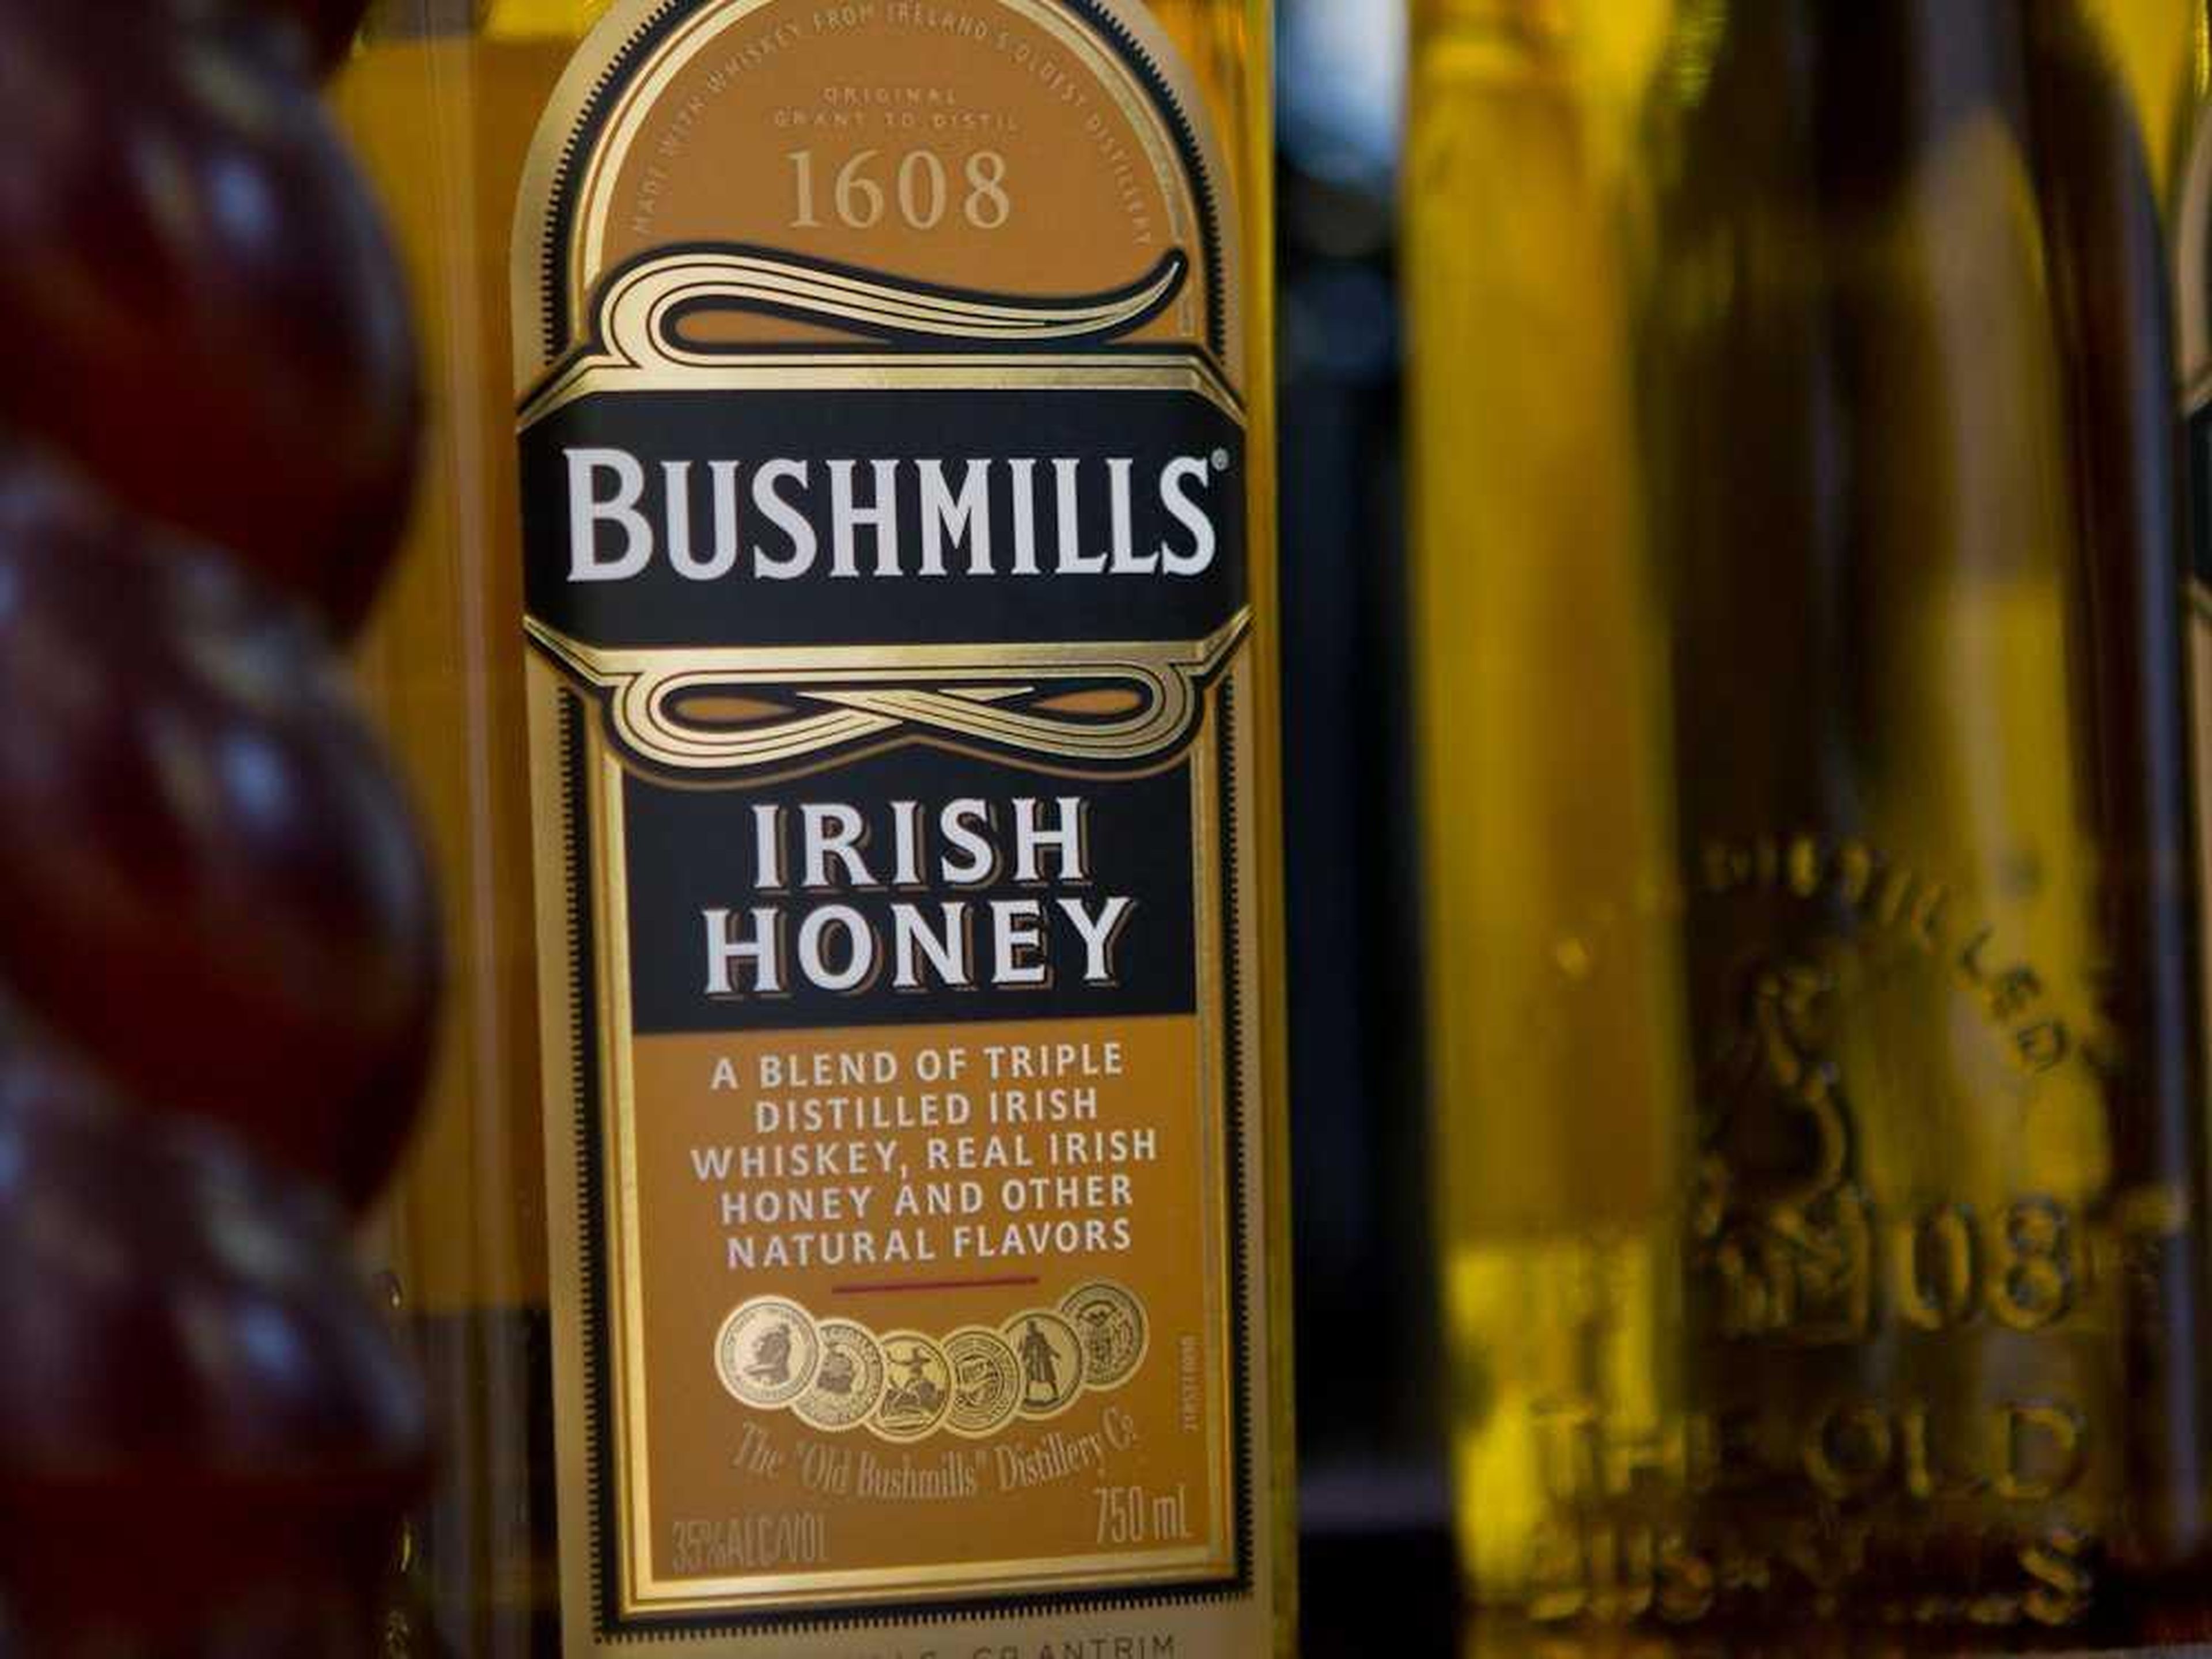 Fundado en 1608 — Bushmills en County Antrim, Irlanda del Norte